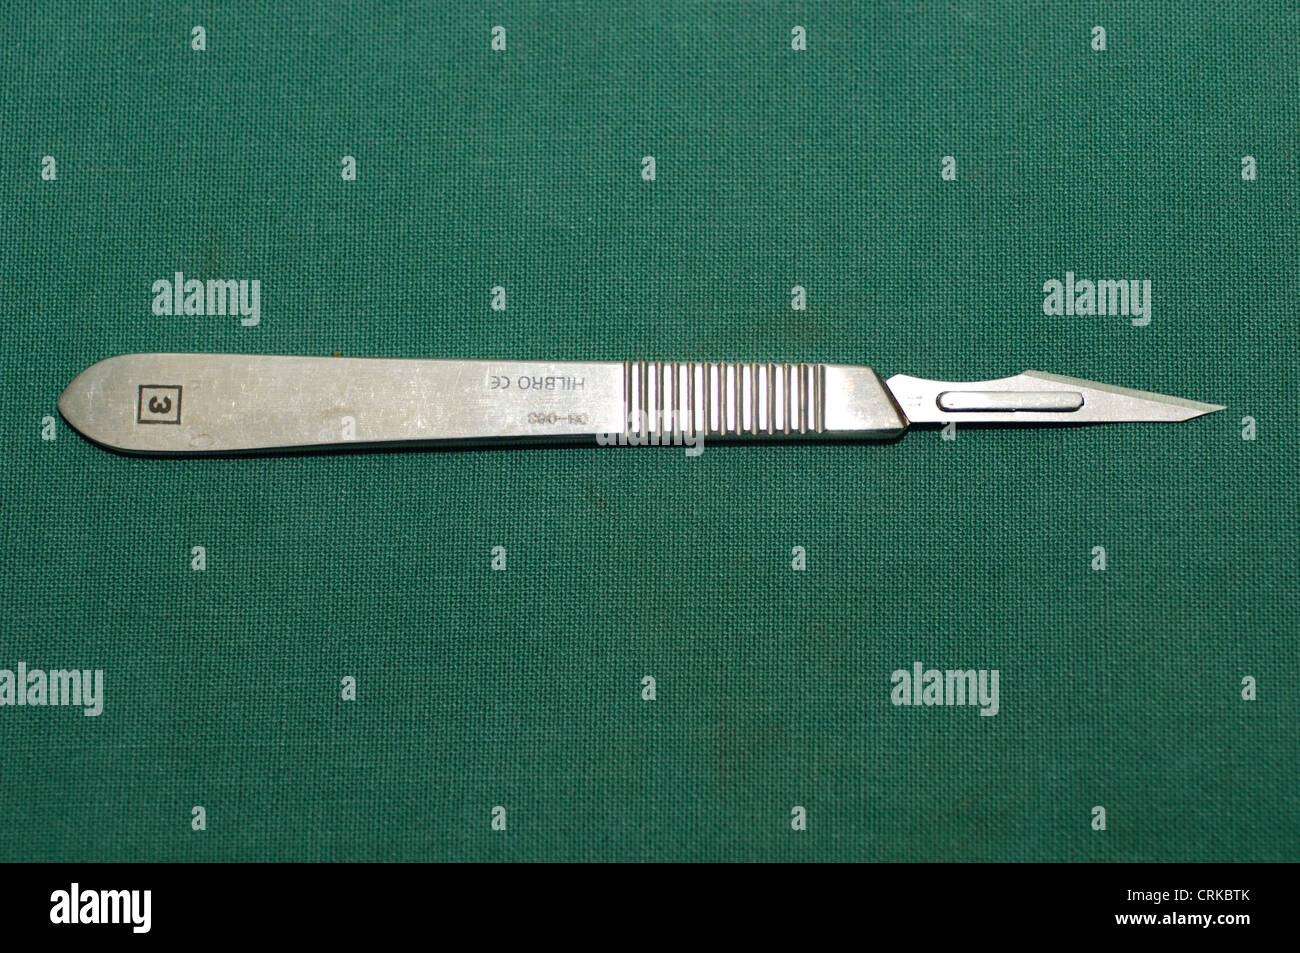 Nr. 3 chirurgischen Skalpell ist eine kleine, aber extrem scharfe Messer für Chirurgie und anatomischen Präparation verwendet. Stockfoto